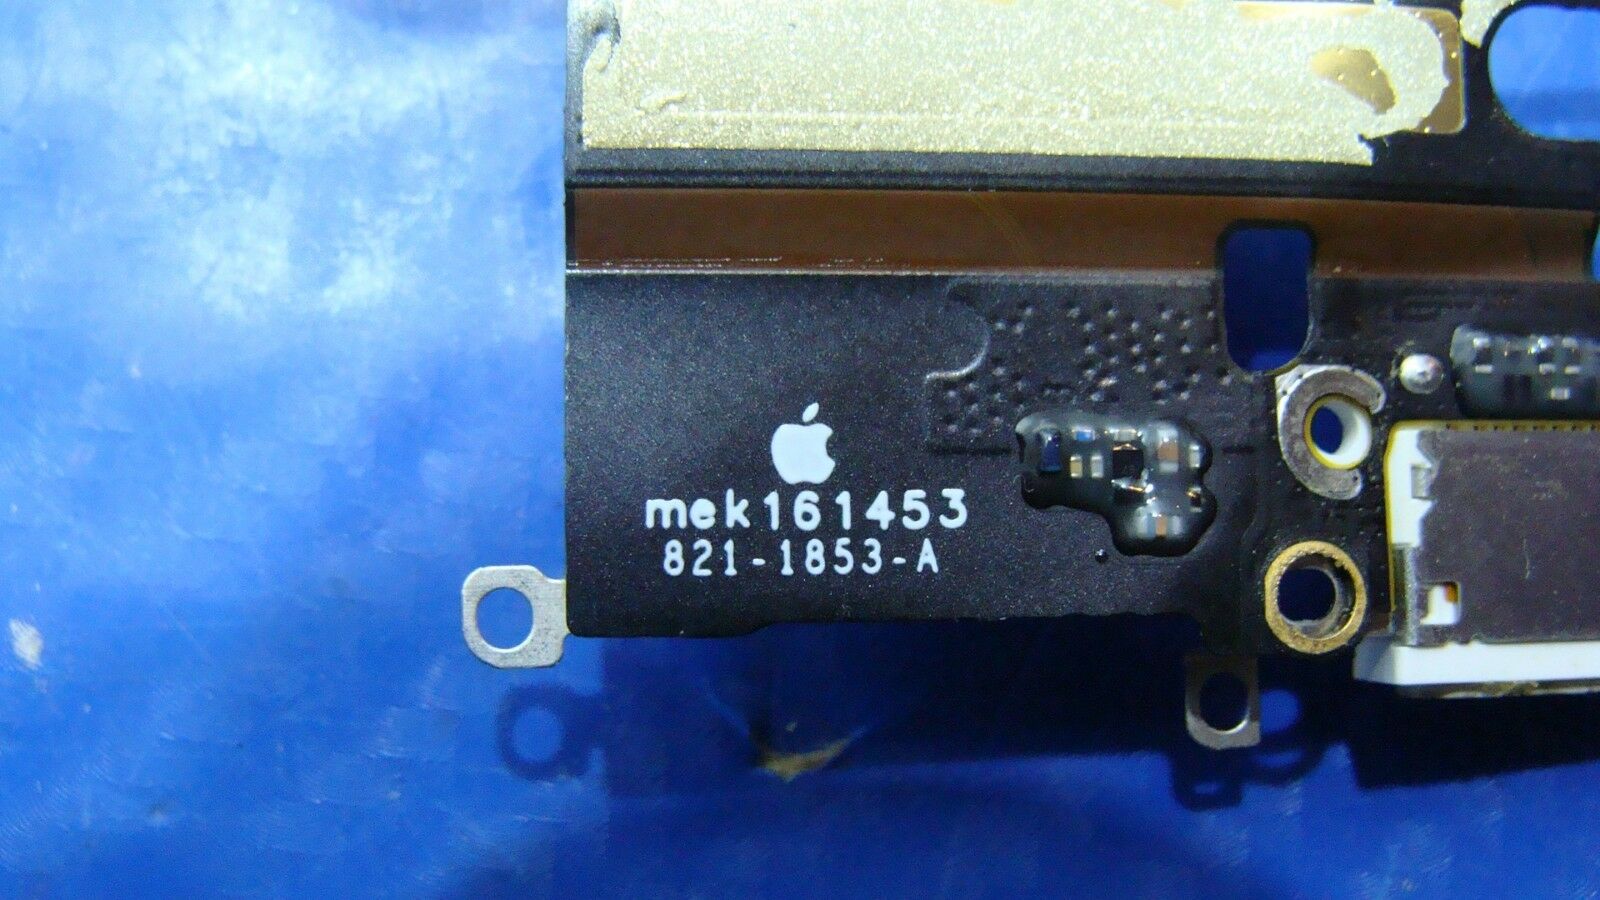 iPhone 6 A1549 4.7